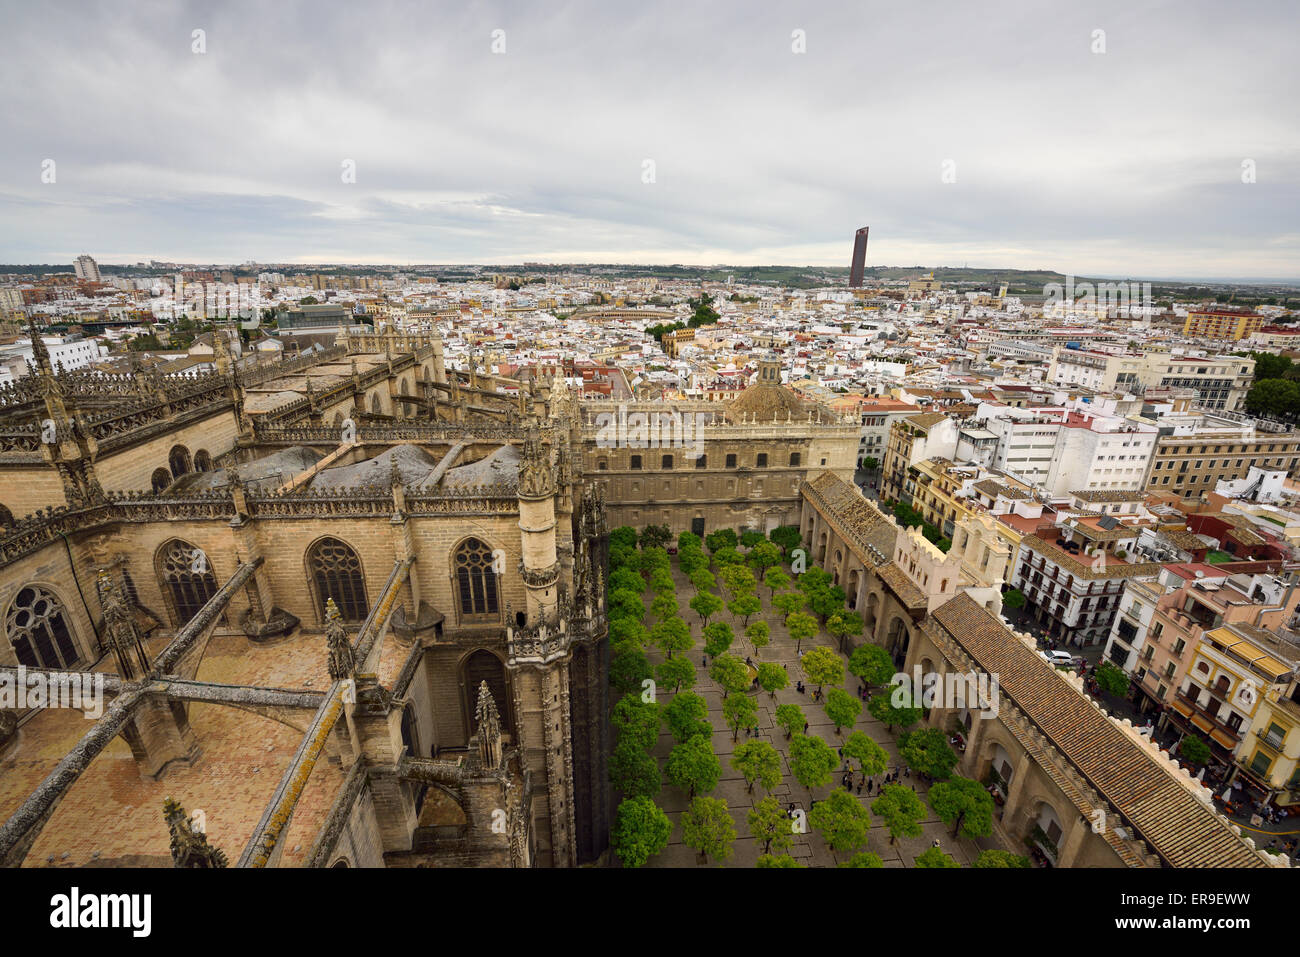 Blick auf Sevilla Stadt westlich von Giralda Turm Saint Mary siehe Dach der Kathedrale und Orangenbaum-Innenhof Andalusien Spanien Stockfoto